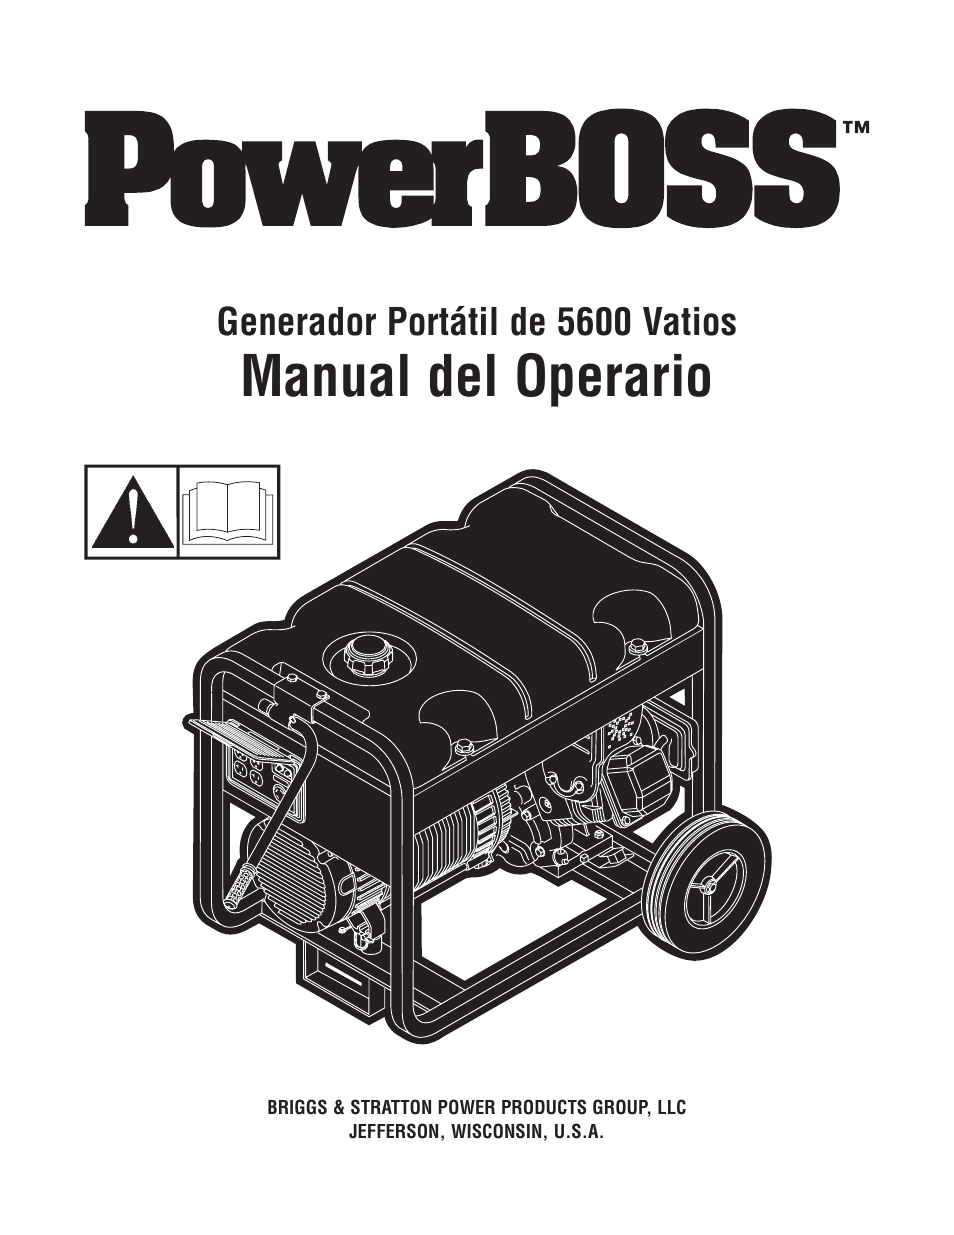 Manual del operario, Generador portátil de 5600 vatios | Briggs